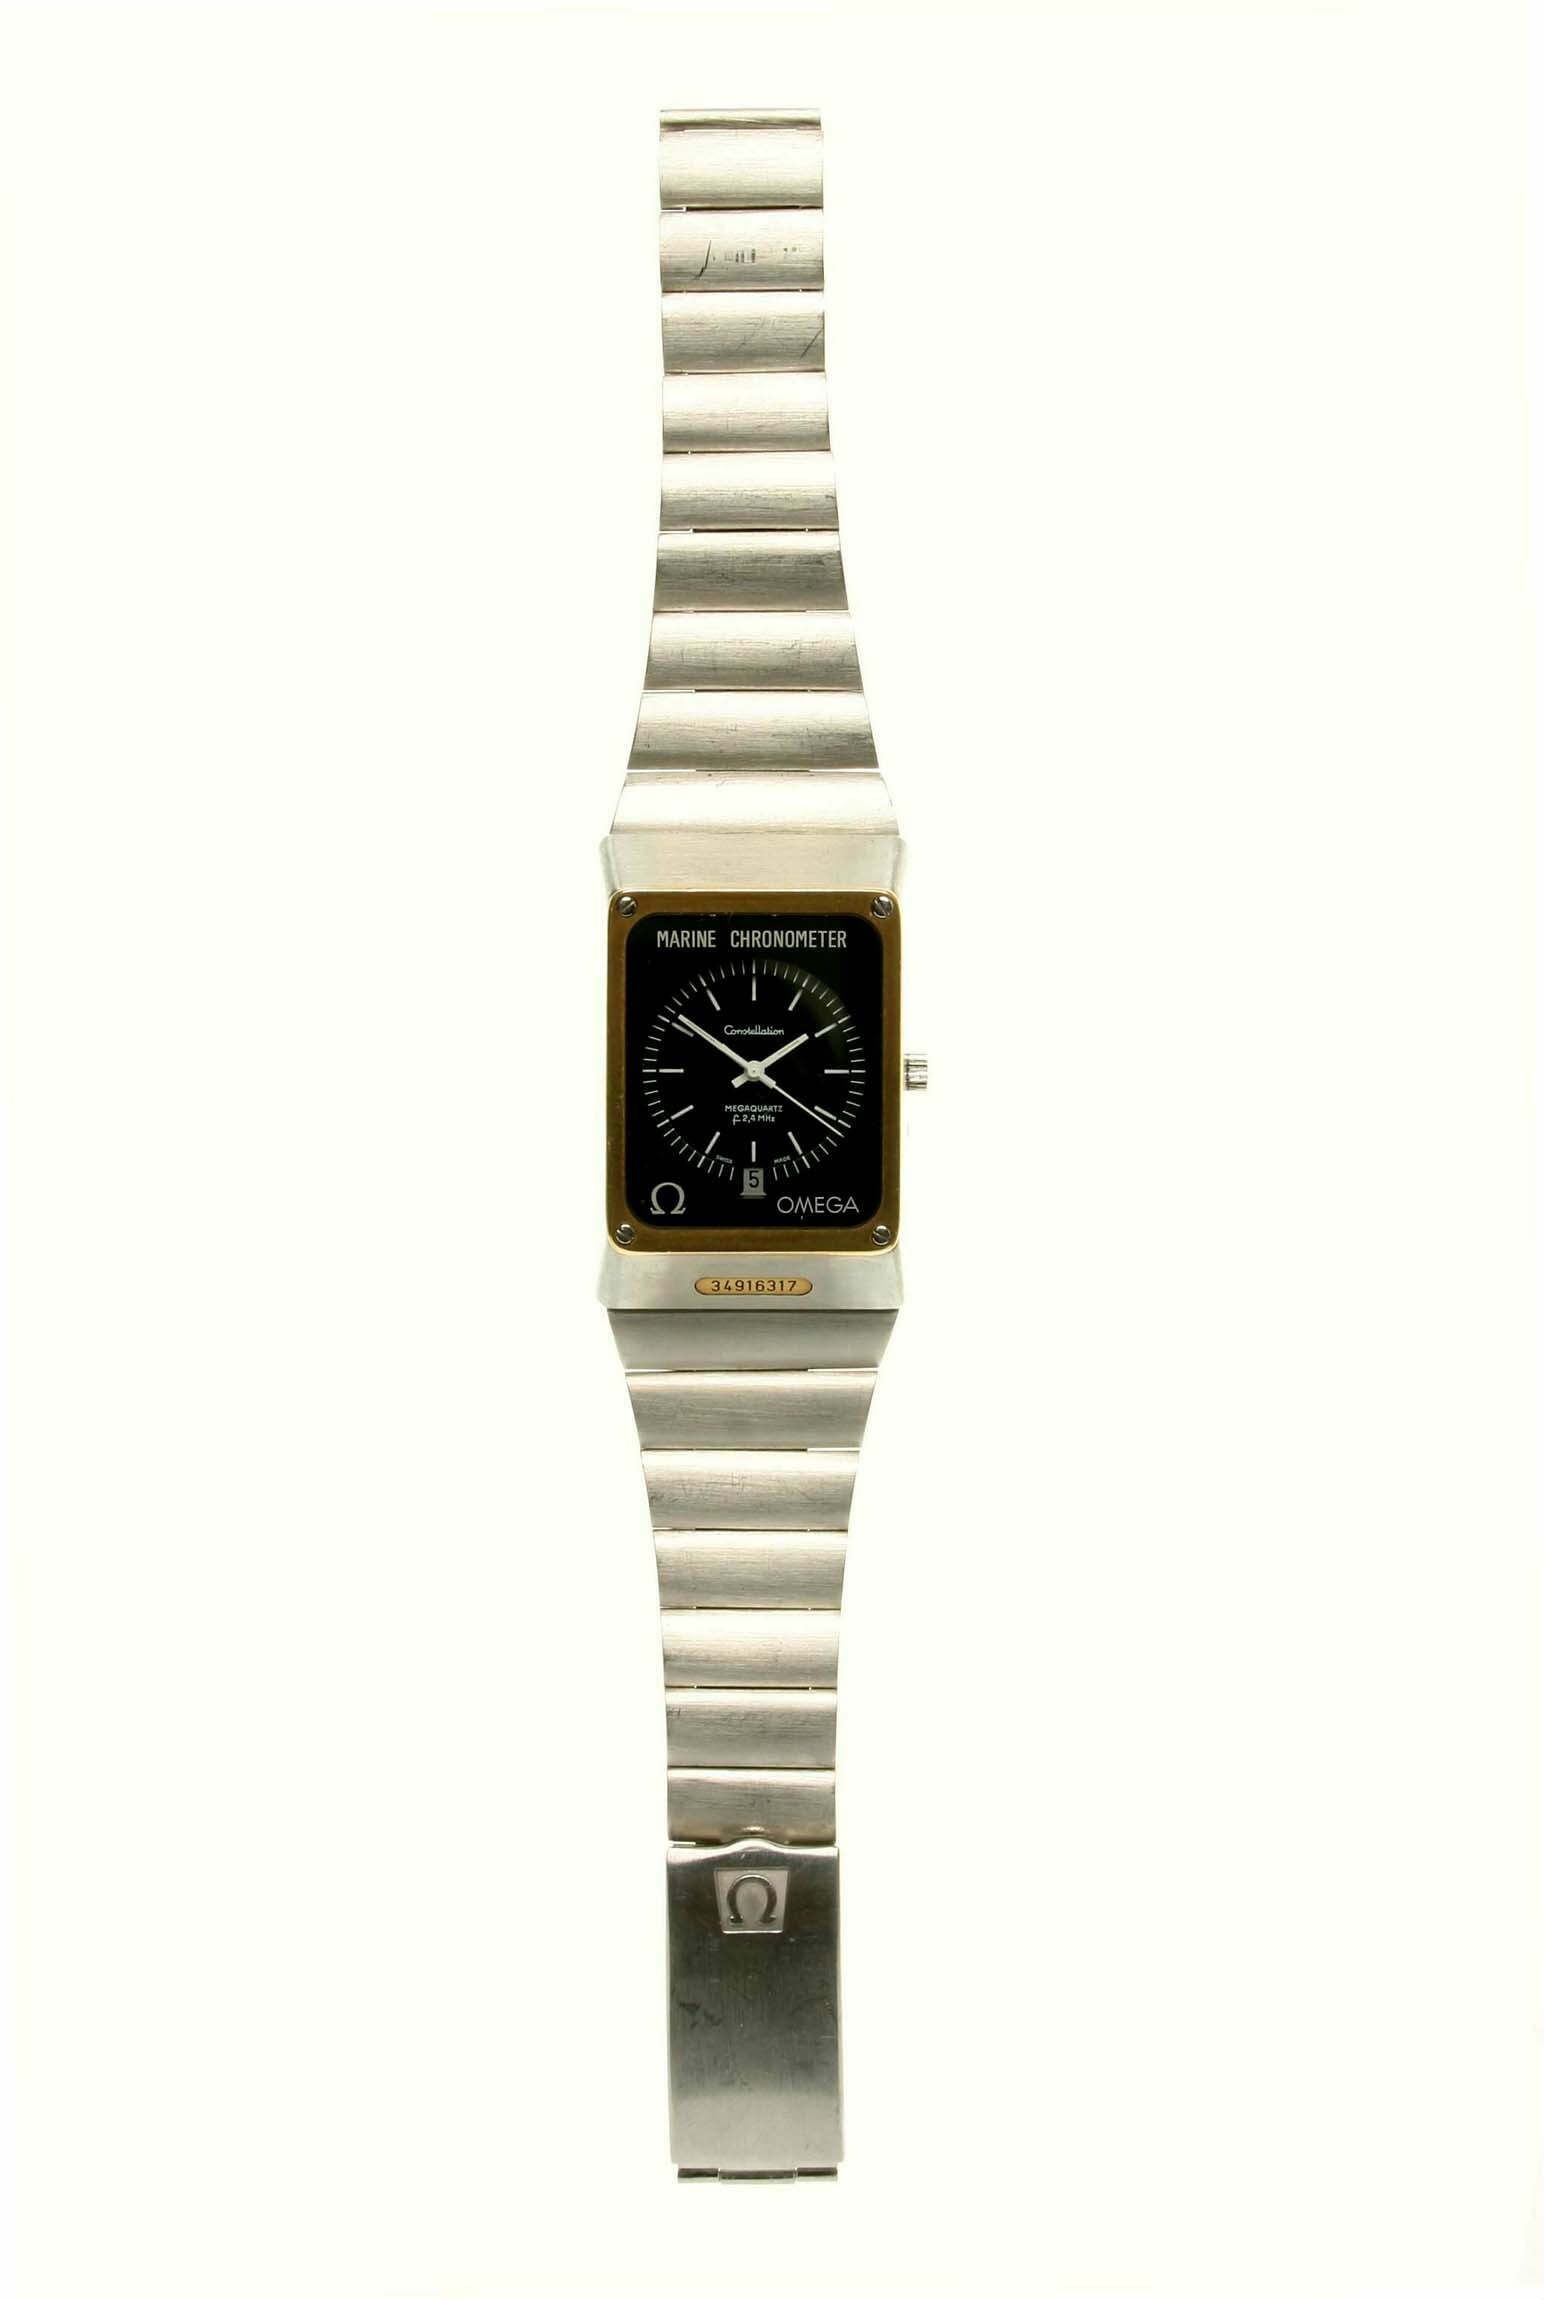 Armbanduhr, Omega, Schweiz, 1974 (Deutsches Uhrenmuseum CC BY-SA)